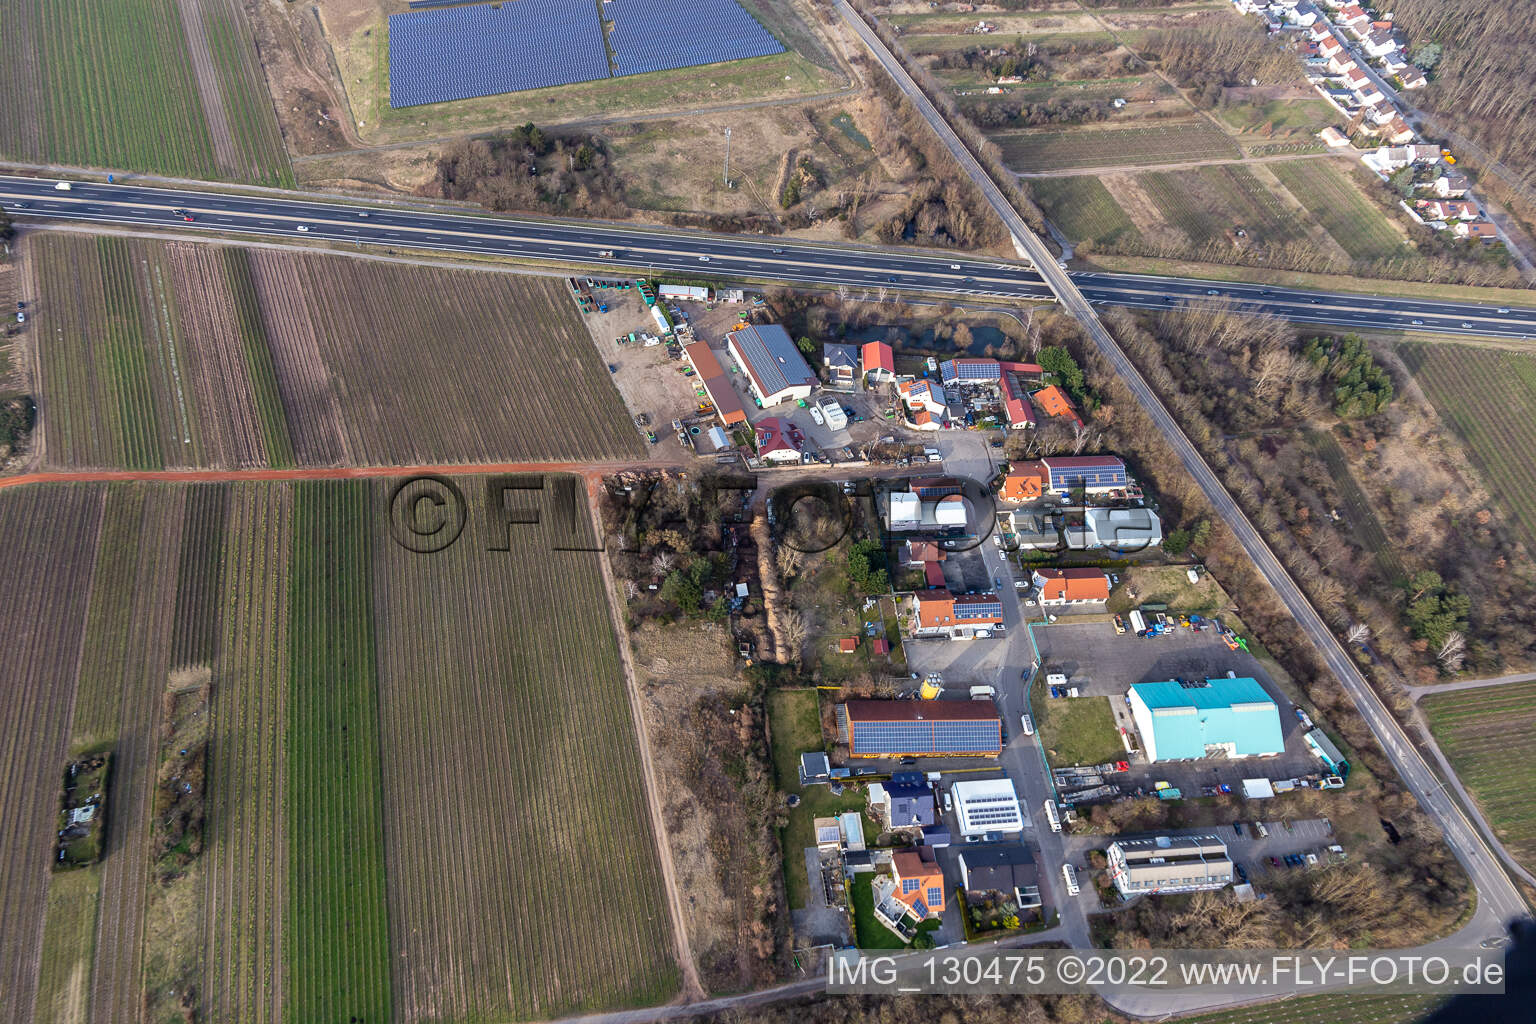 Zone commerciale dans le Nauroth à Ellerstadt dans le département Rhénanie-Palatinat, Allemagne vue d'en haut